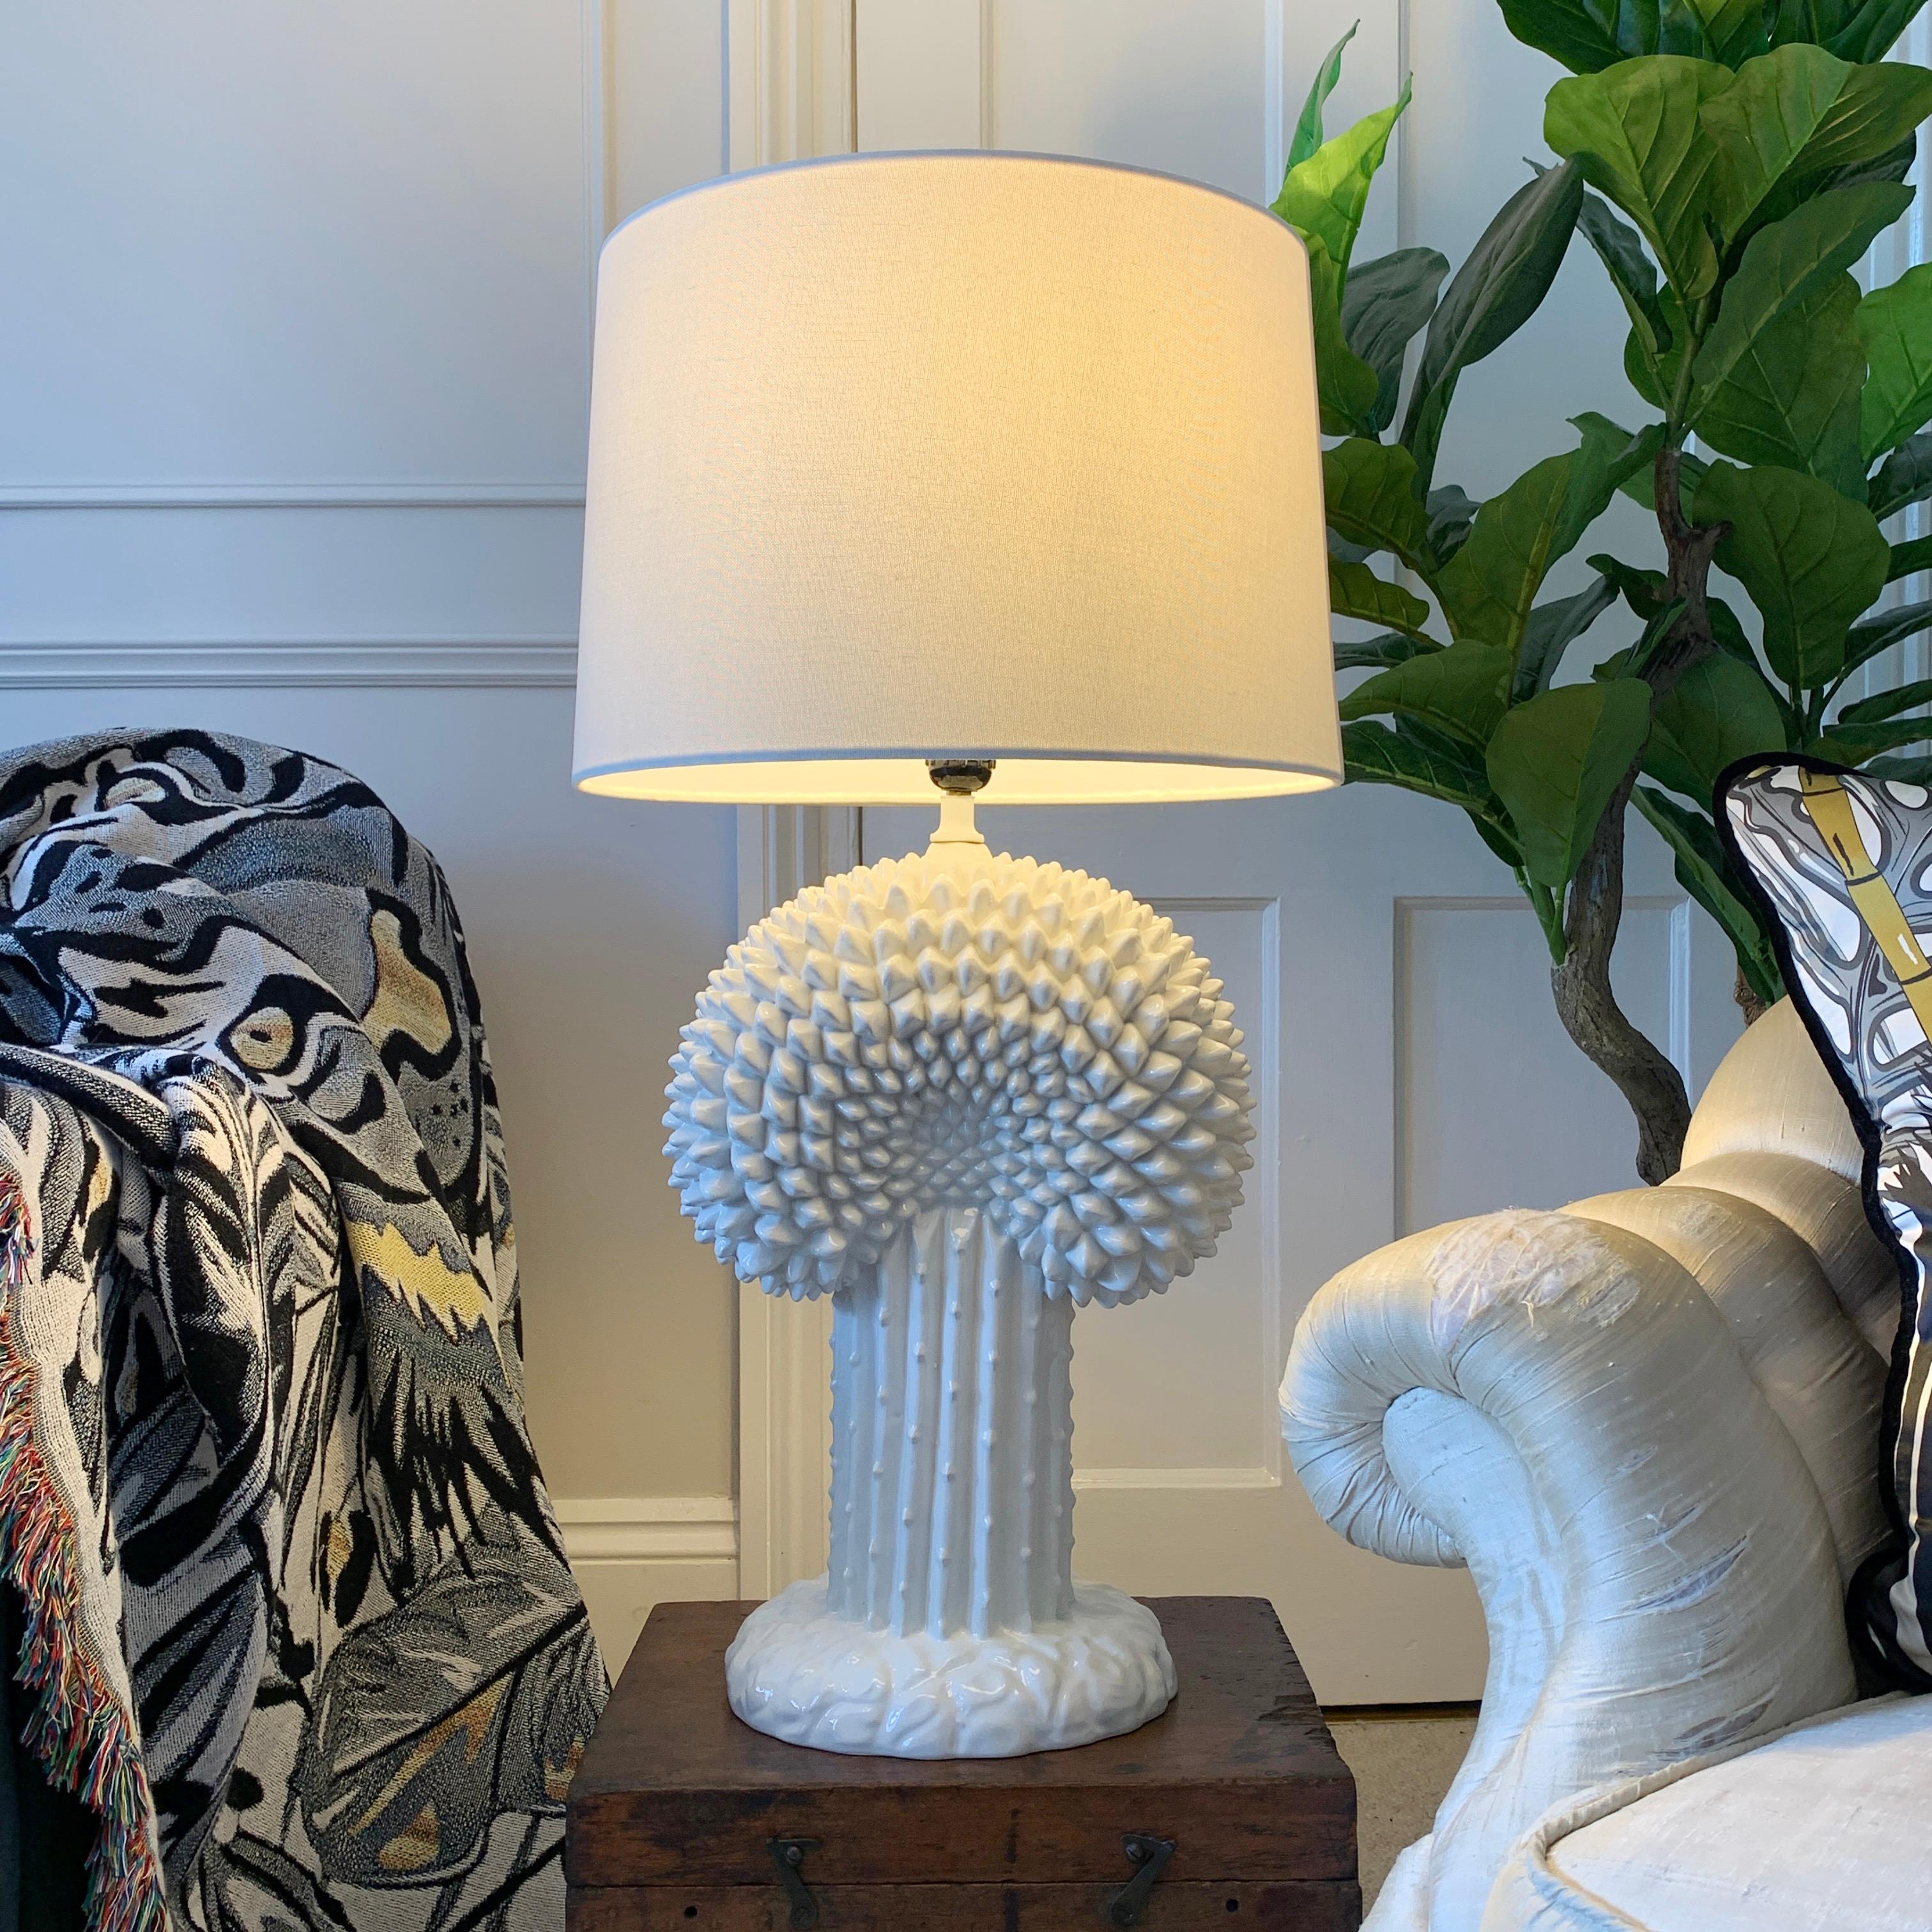 Lampe cactus en céramique des années 1970 Italie

Ces lampes sont généralement considérées comme une création du décorateur et artiste américain John Dickinson, mais la seule marque visible est celle qui indique qu'elles ont été fabriquées en